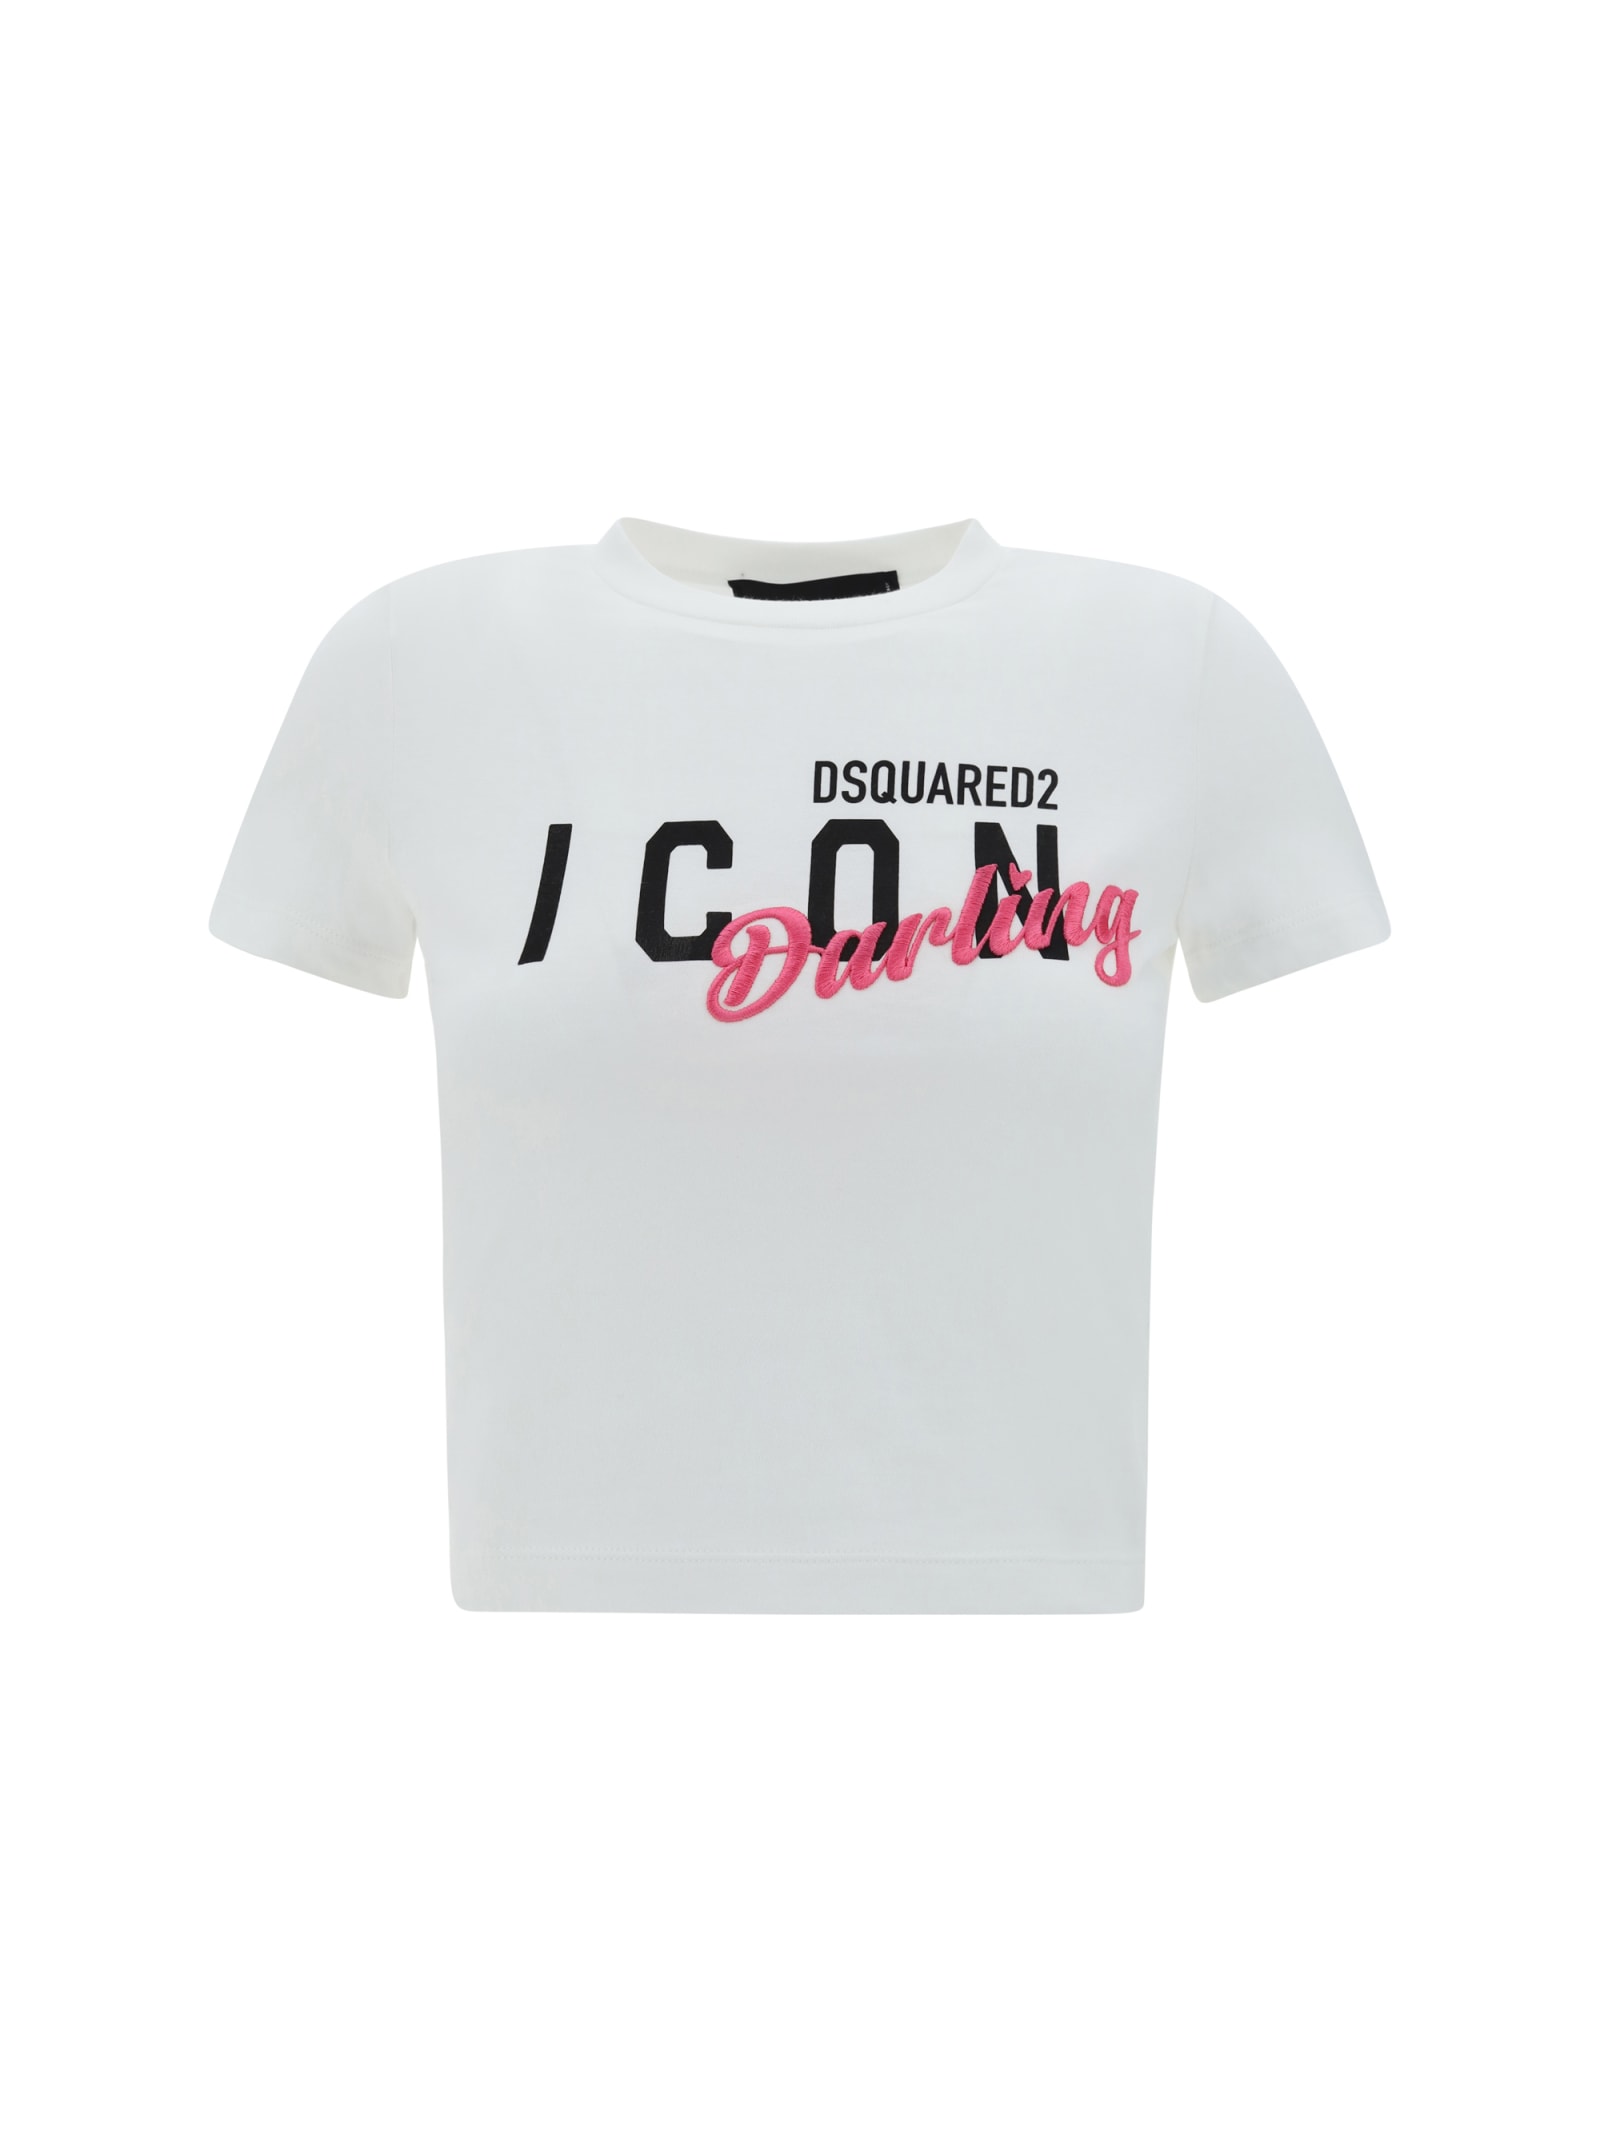 Icon Darling Mini Fit T-shirt